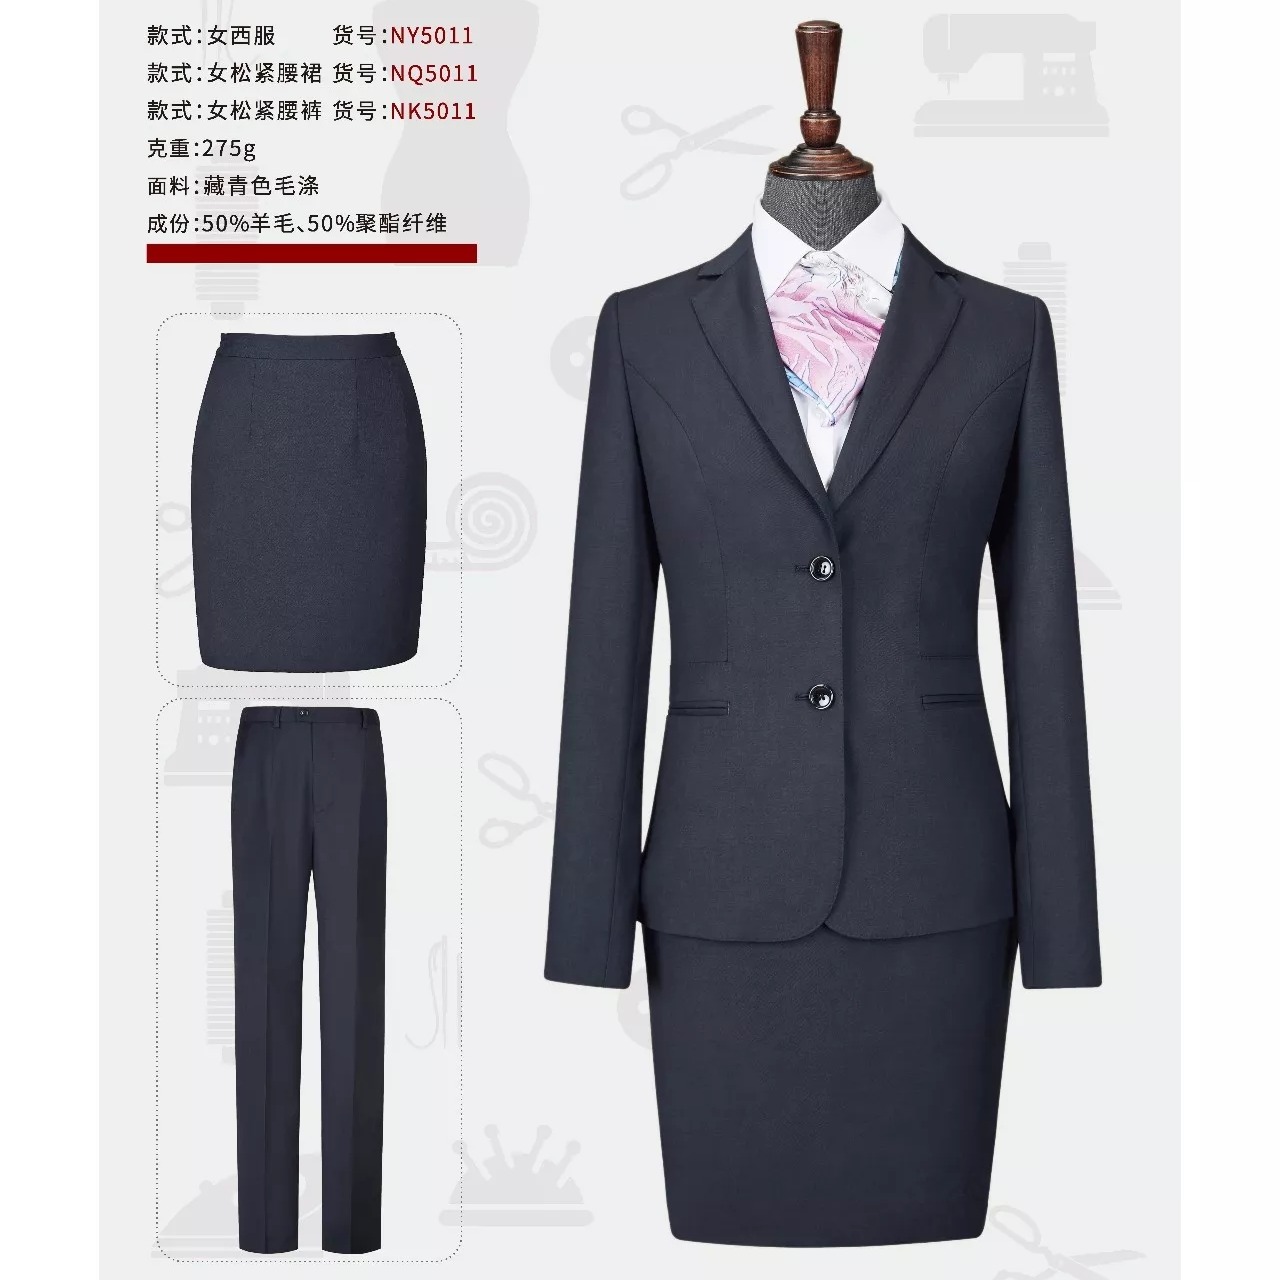 款式新颖 设计时尚 西安西服厂家定做 男式西服套装 西安职业西装2